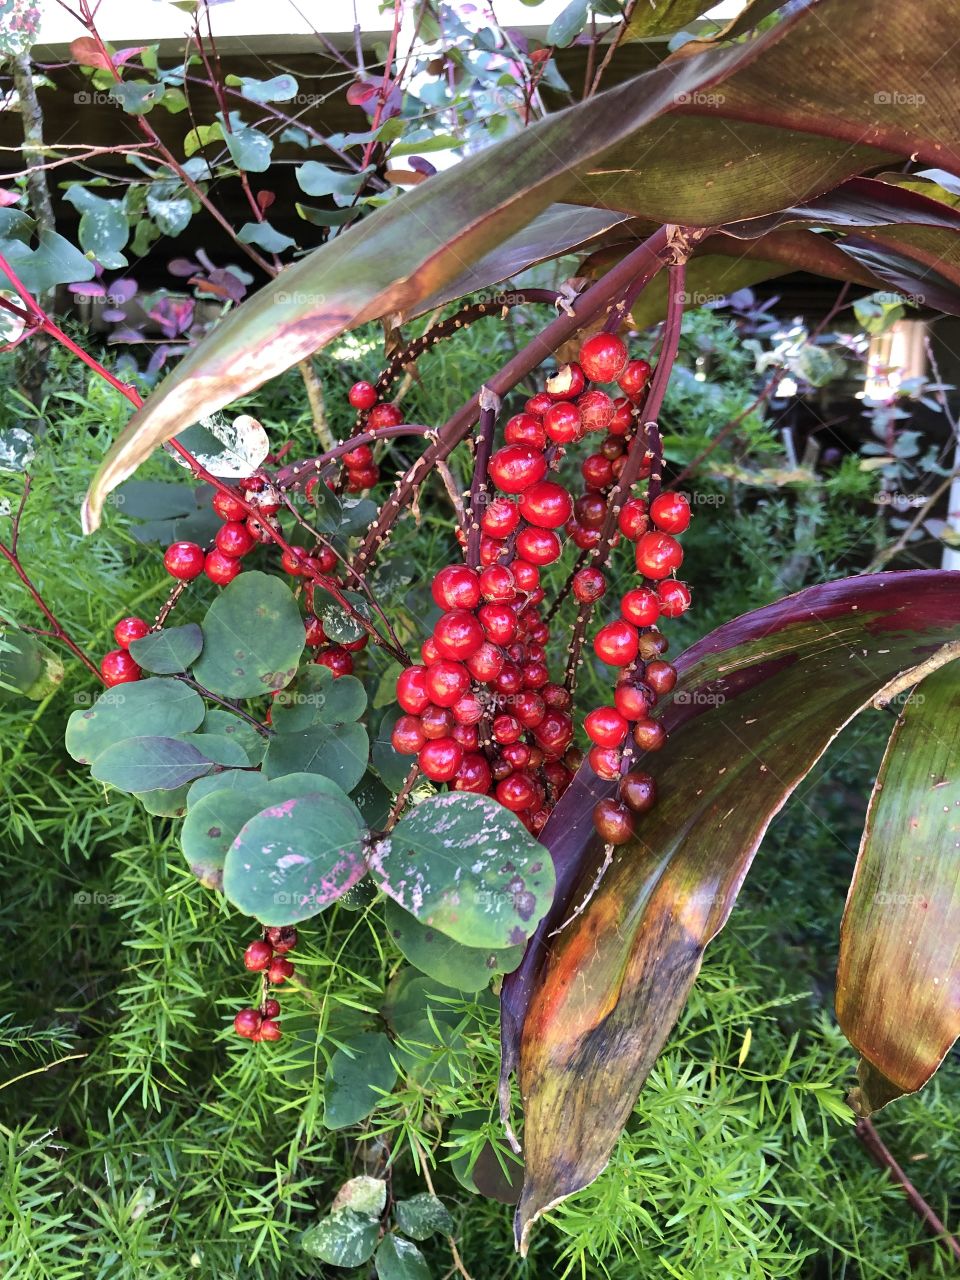 Hawaiian berries